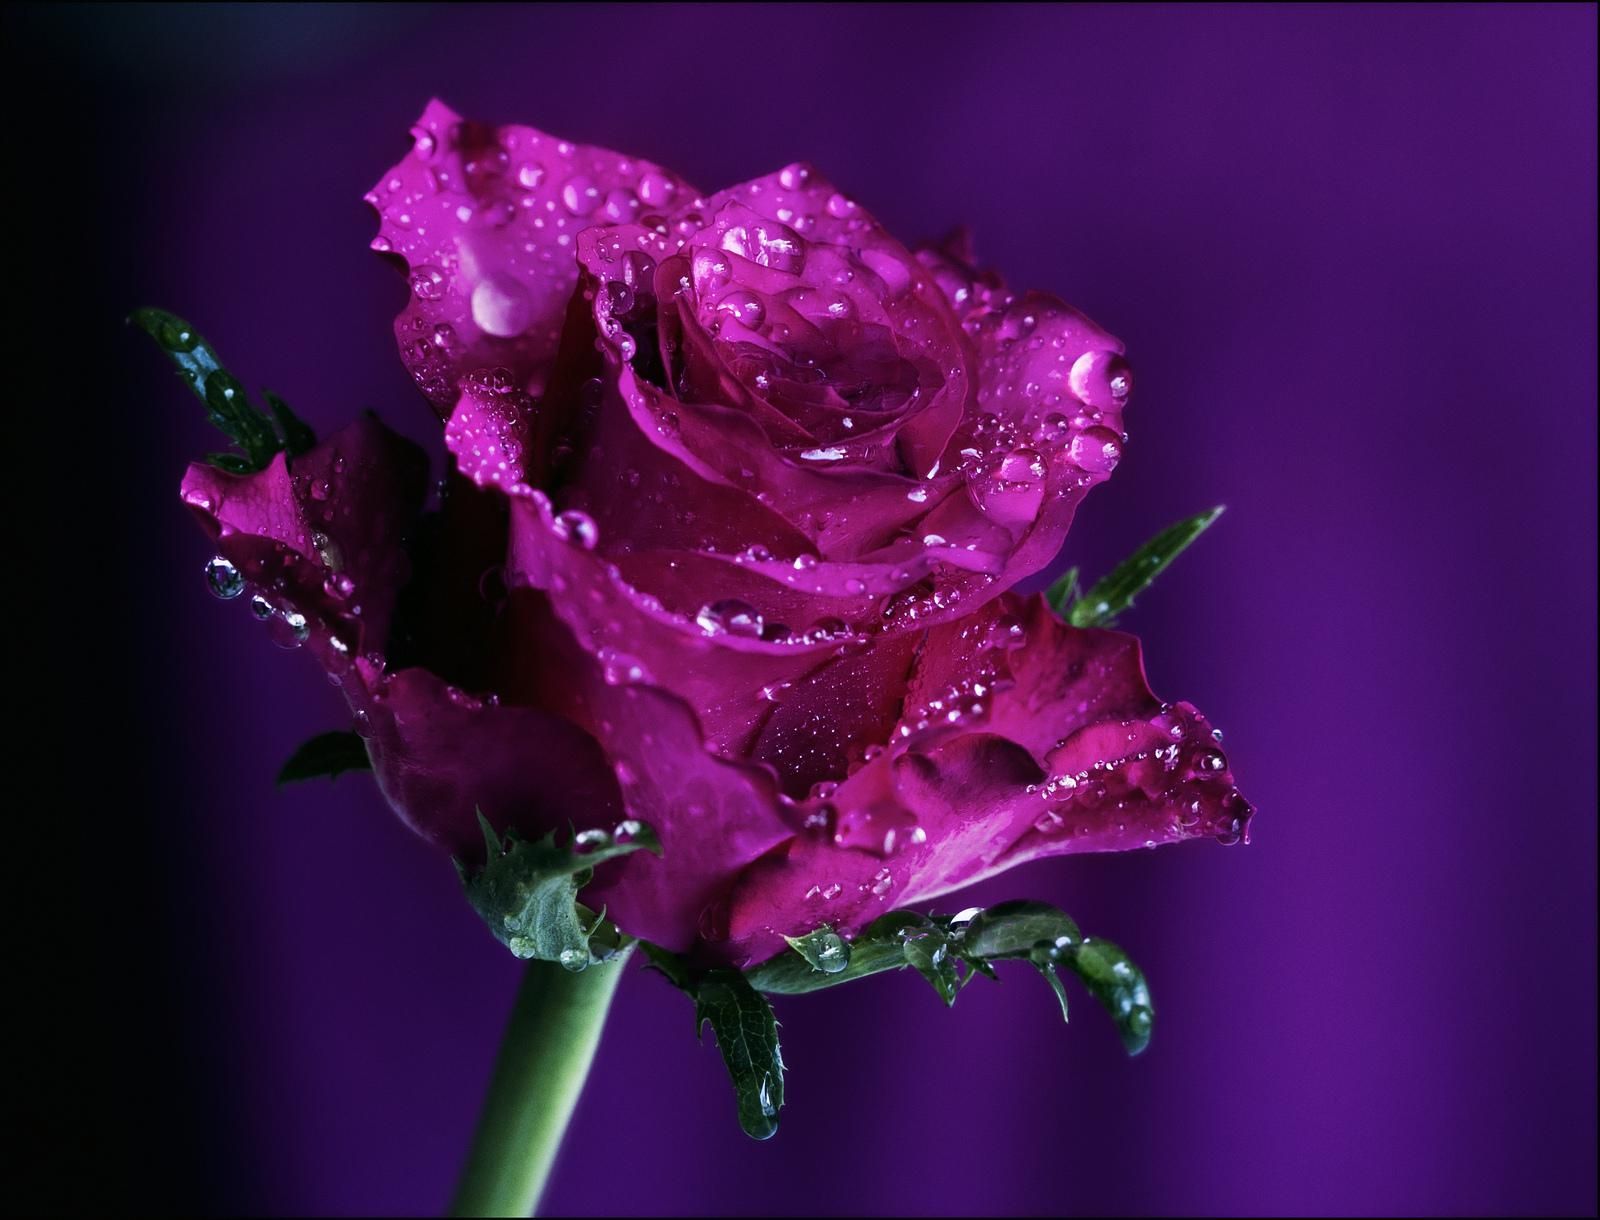 Hình nền hoa hồng tím đẹp sẽ làm cho màn hình điện thoại của bạn trở nên lung linh và đầy sức sống. Các bạn sẽ cảm nhận được vẻ đẹp huyền bí của những bông hoa hồng tím này và cảm thấy thư giãn sau một ngày làm việc căng thẳng.